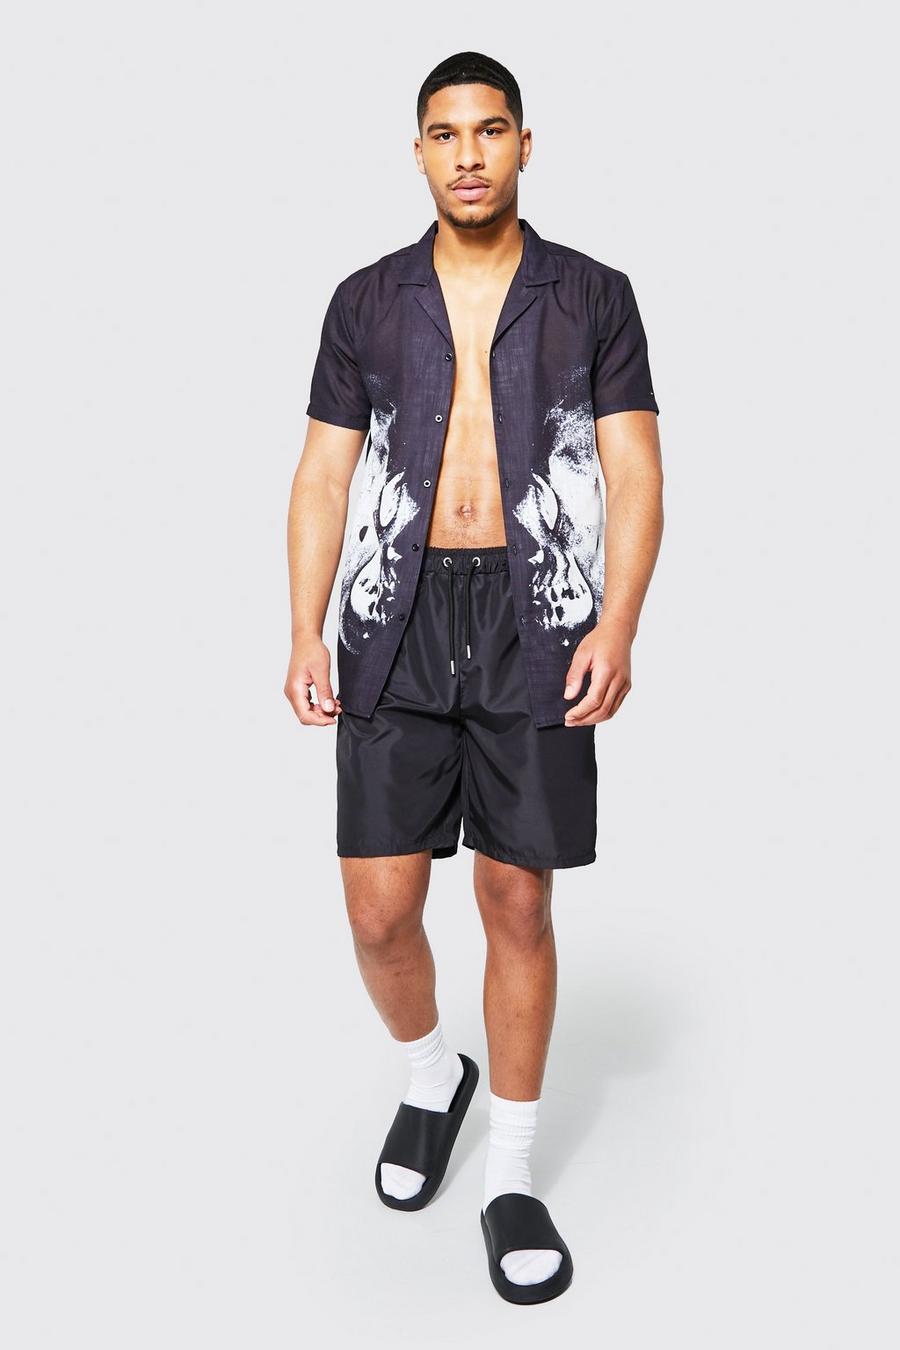 שחור nero סט בגד ים וחולצה מבד עם טקסטורה עם עיטור גולגולת, לגברים גבוהים image number 1